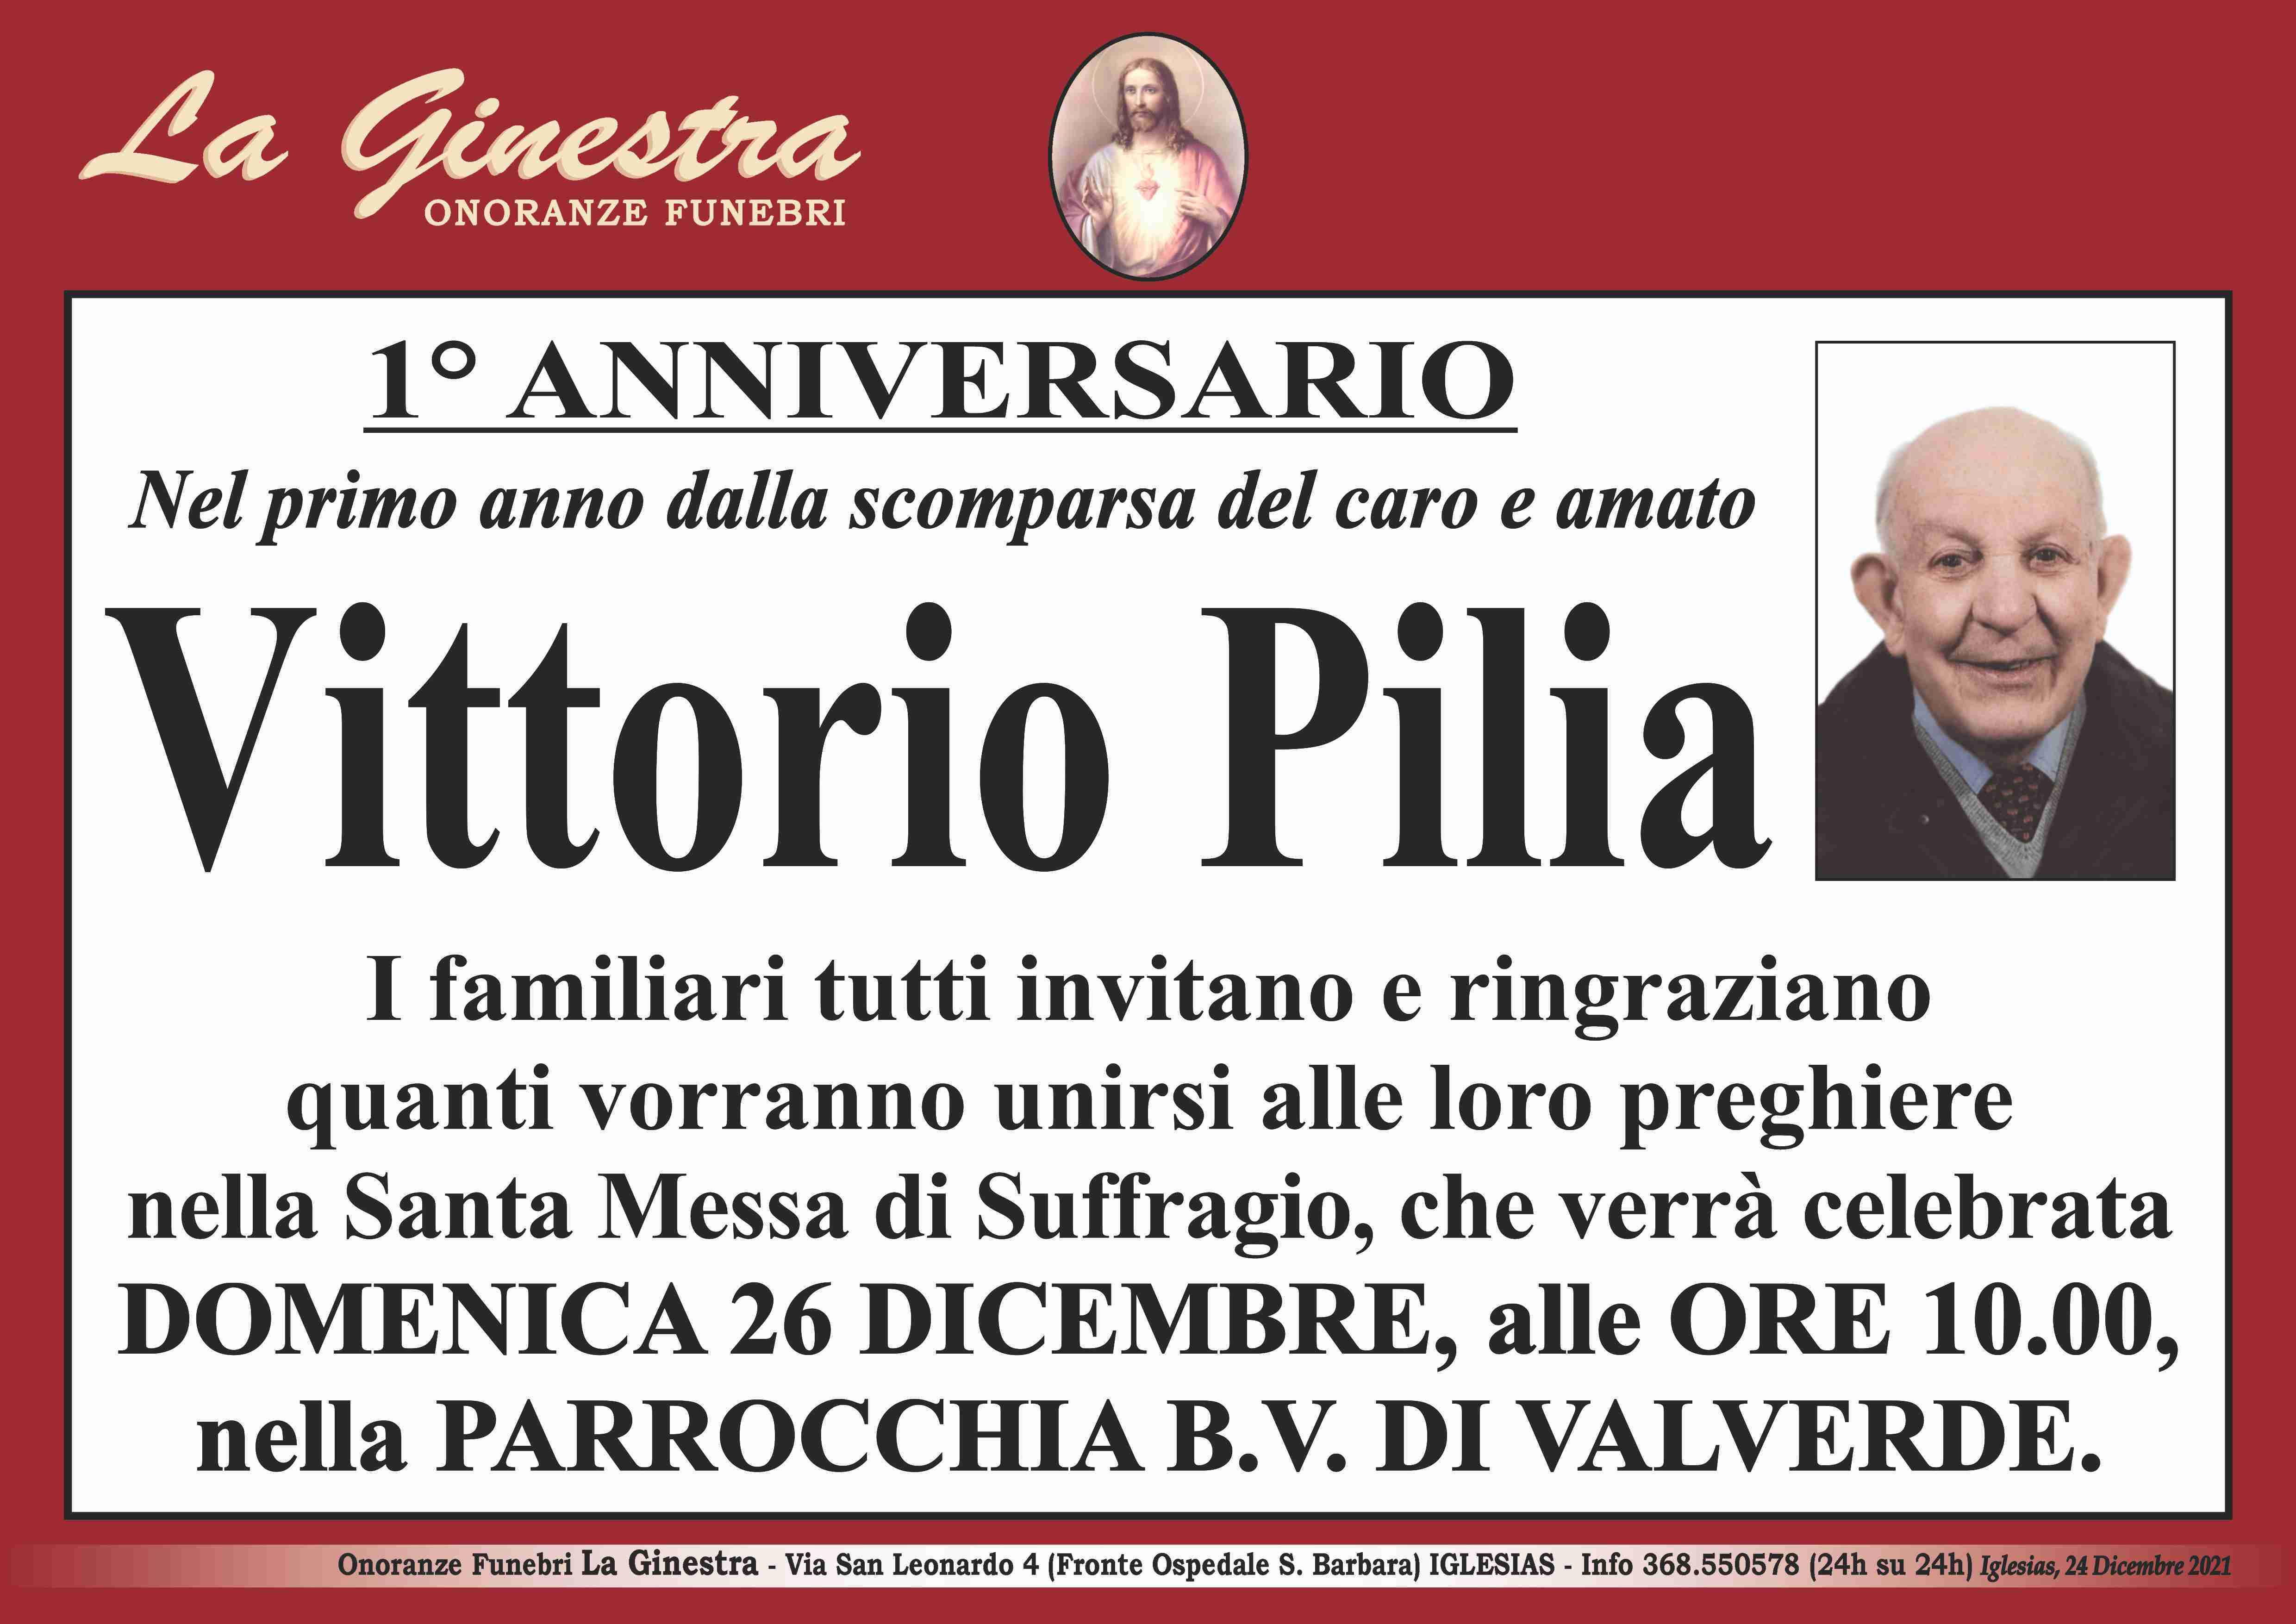 Vittorio Pilia